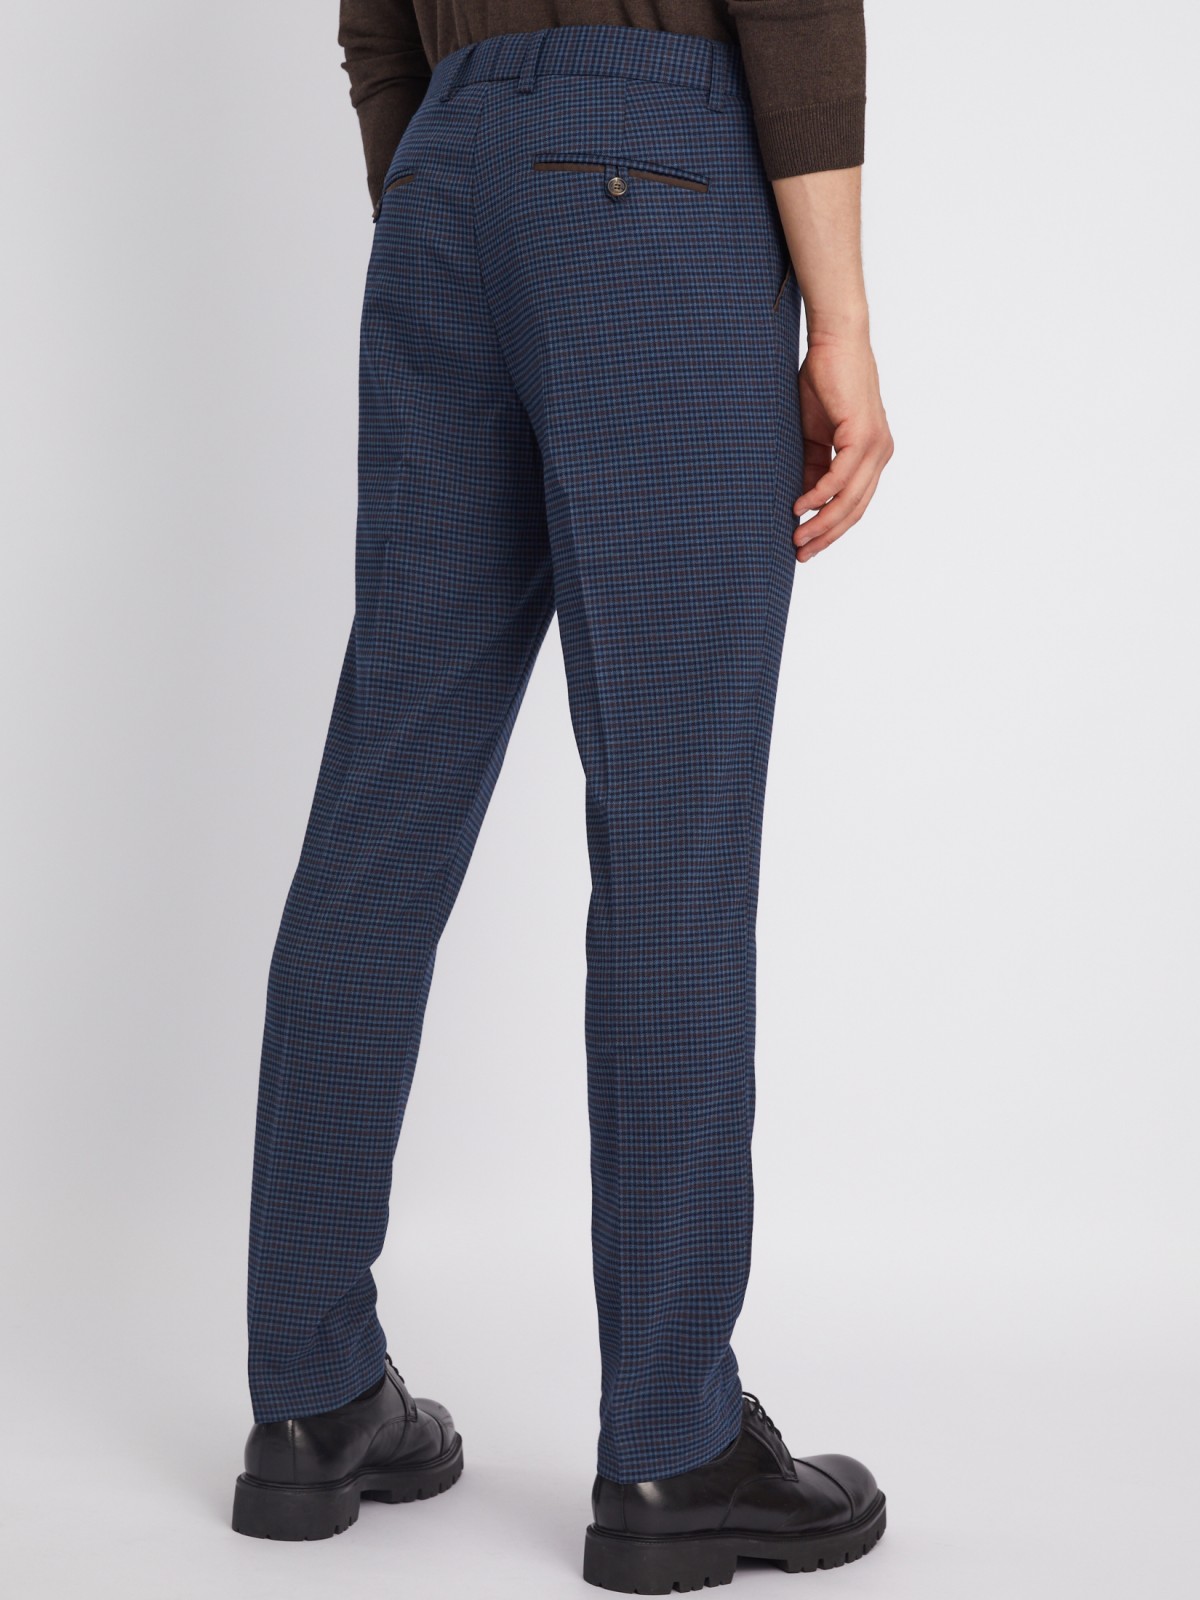 Офисные брюки силуэта Slim со стрелками и узором в клетку zolla 012337366033, цвет голубой, размер 34 - фото 5